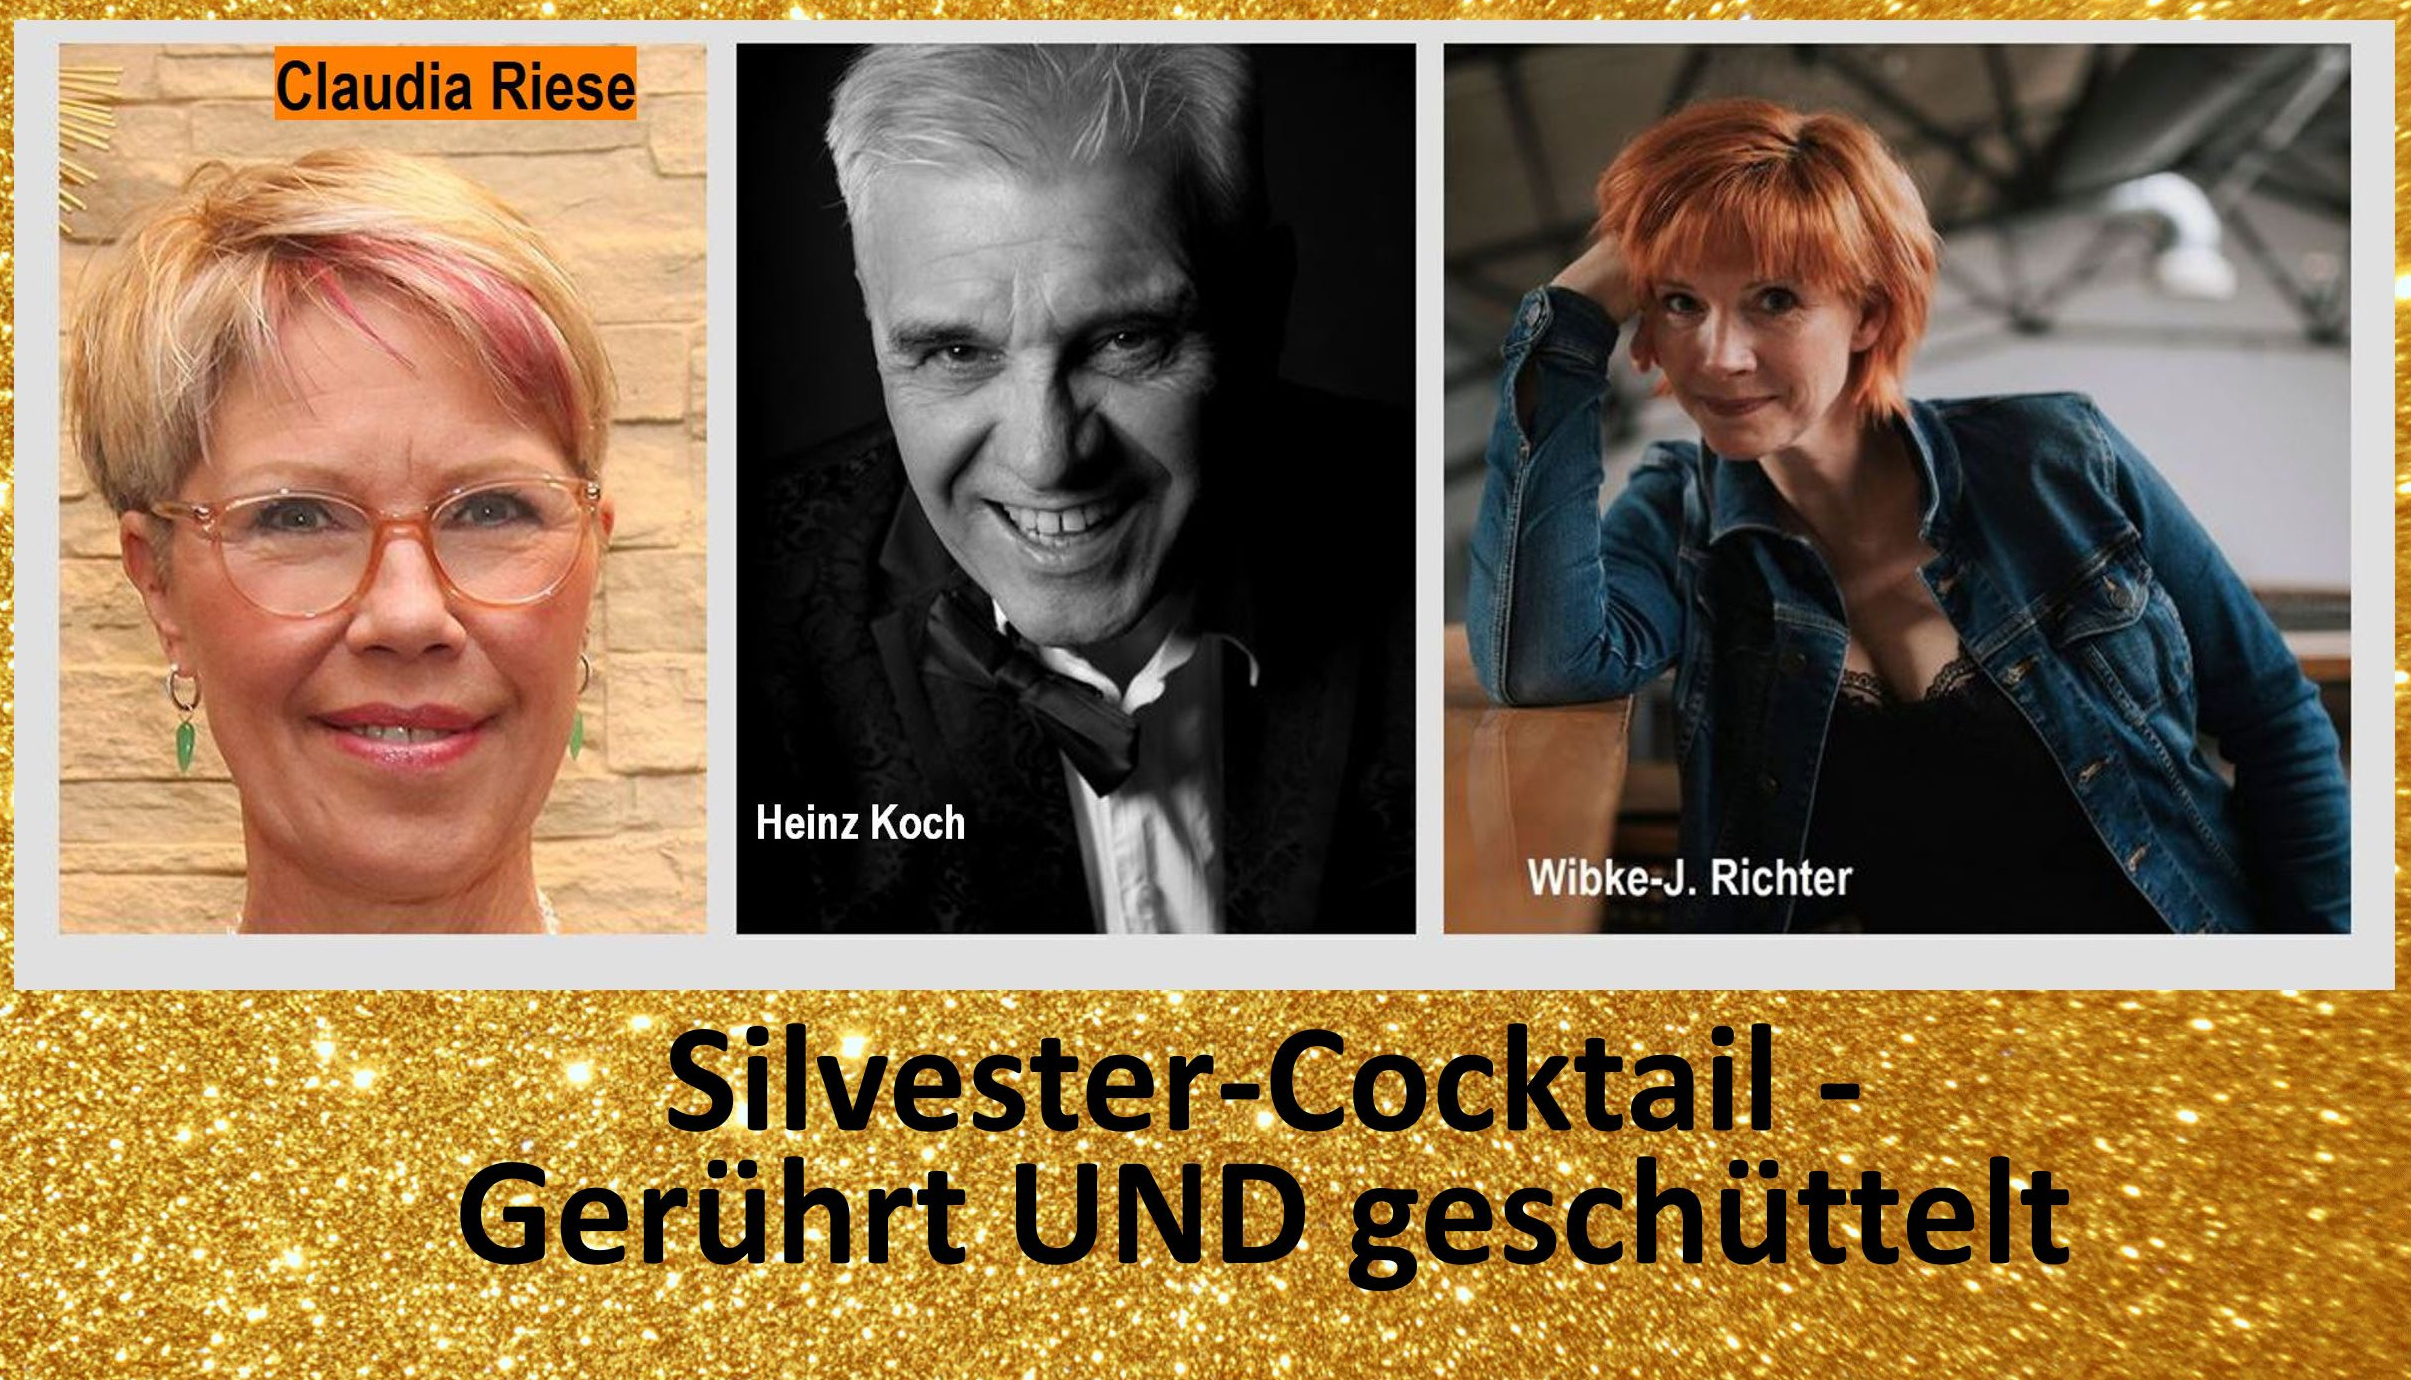 Claudia Riese, Heinz Koch, Wibke-J. Richter